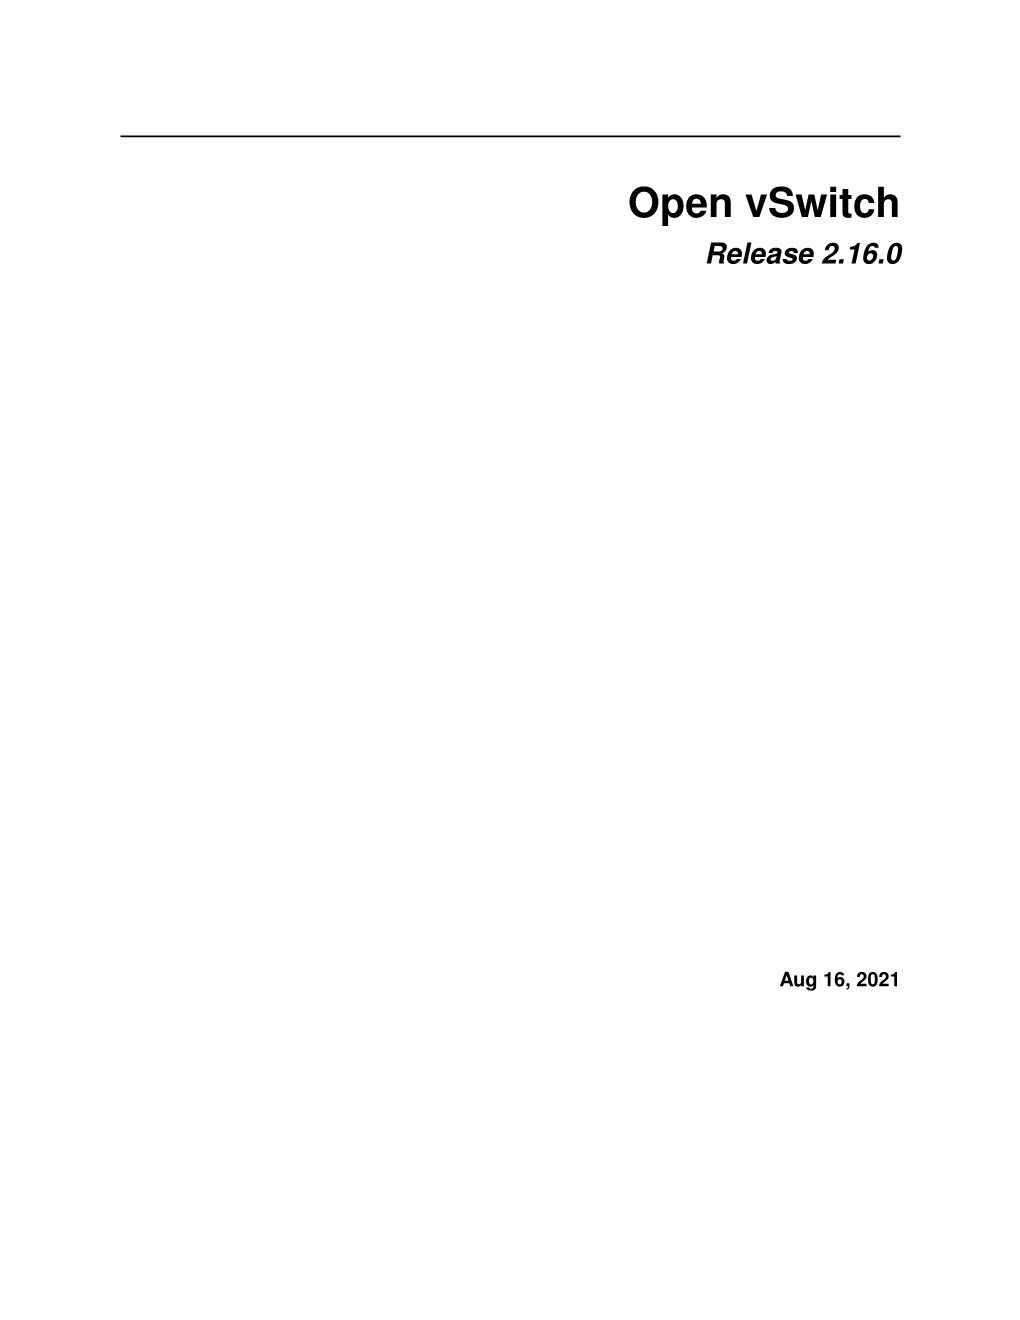 Open Vswitch Release 2.16.0